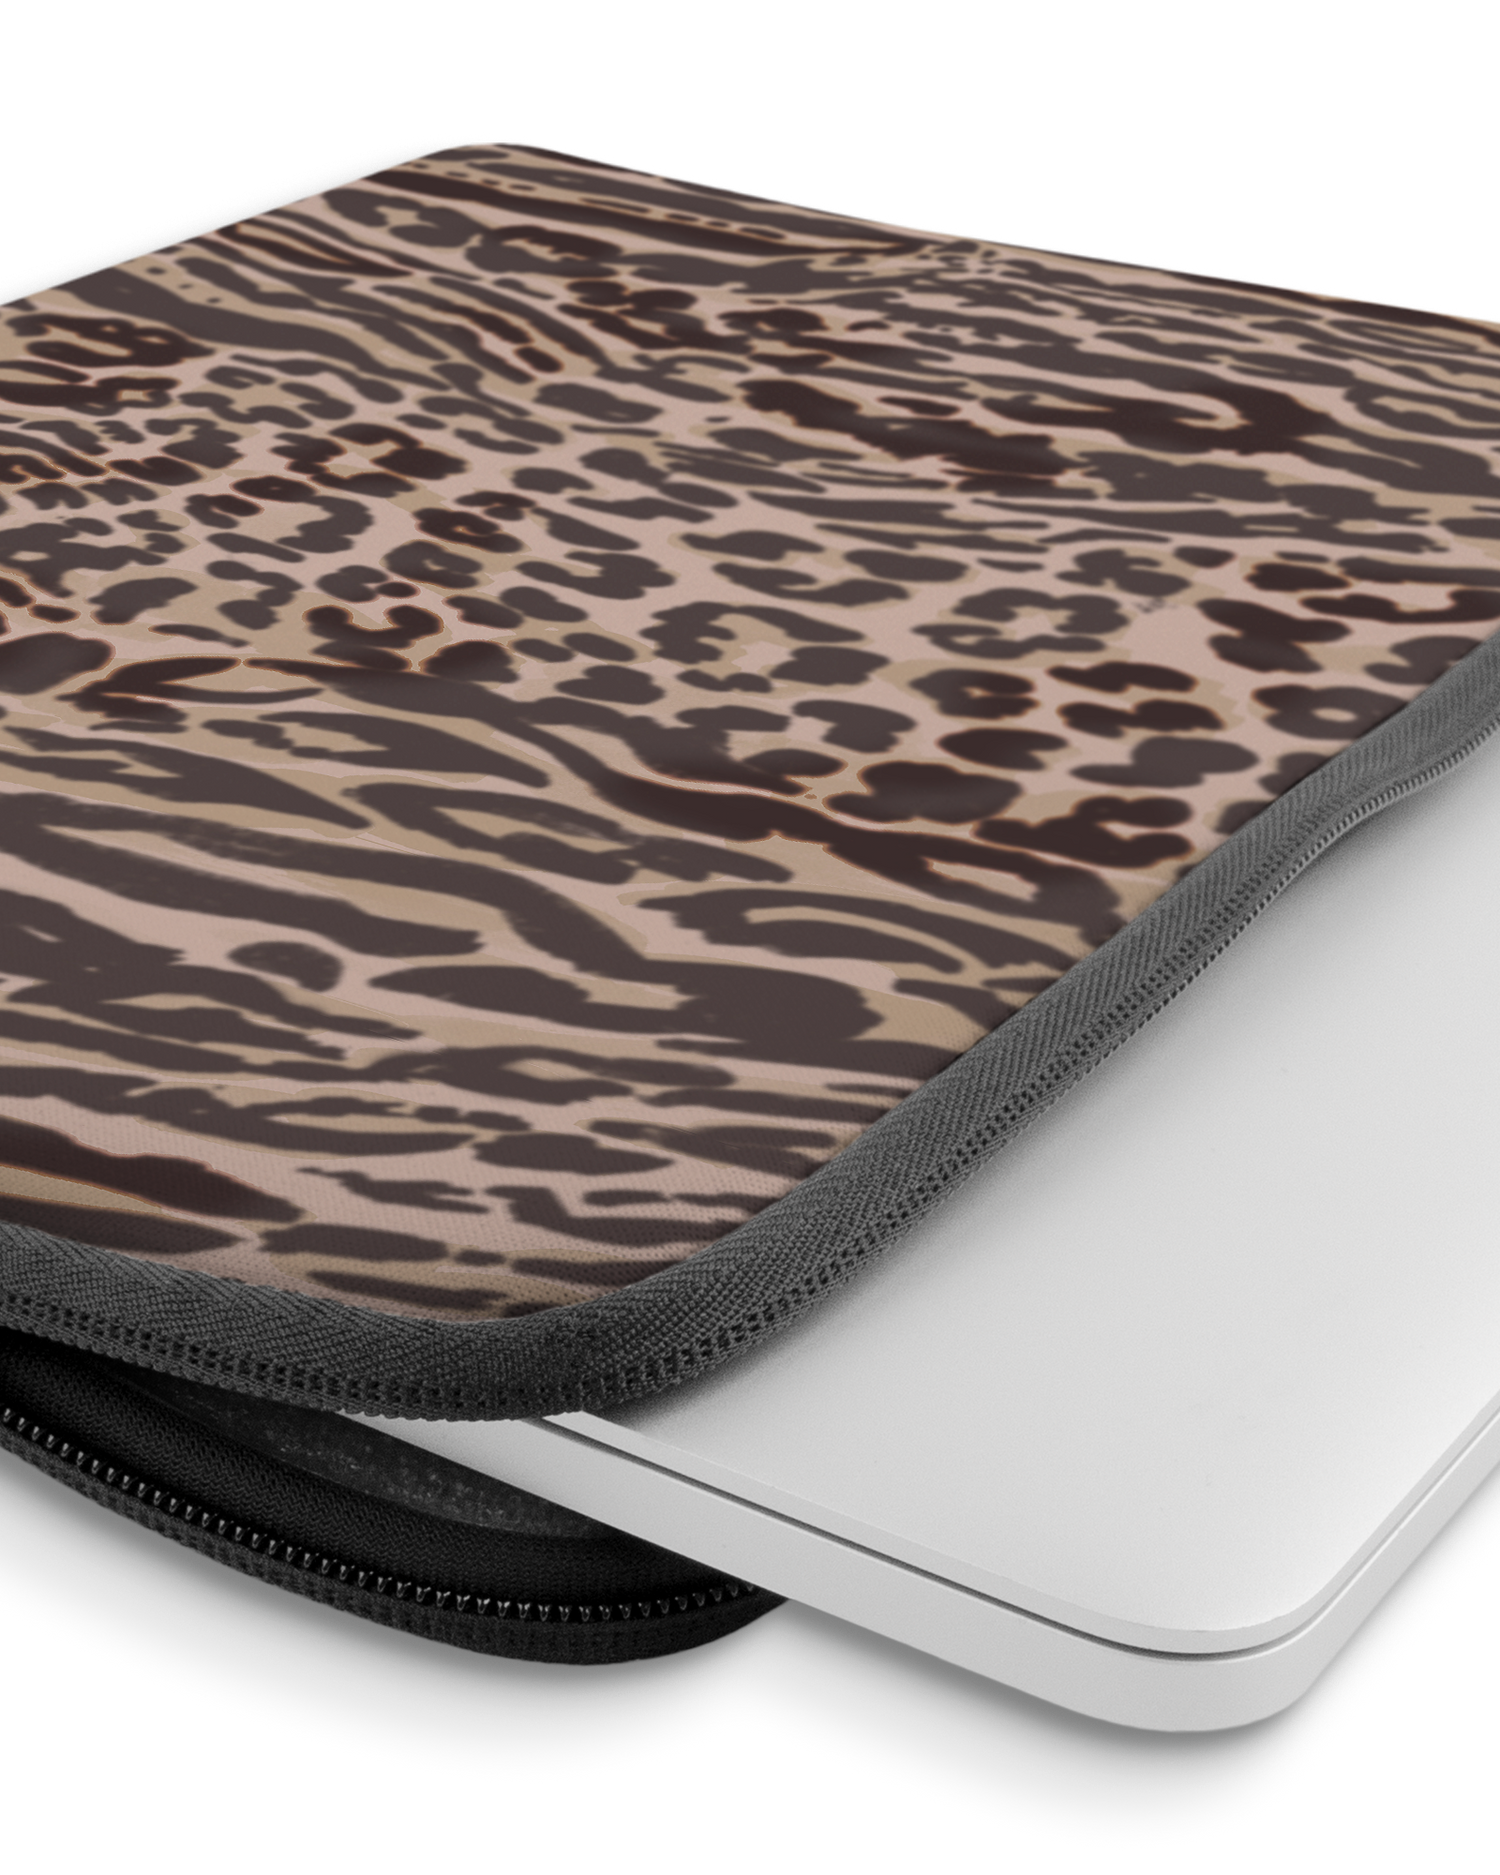 Animal Skin Tough Love Laptophülle 14 Zoll mit Gerät im Inneren